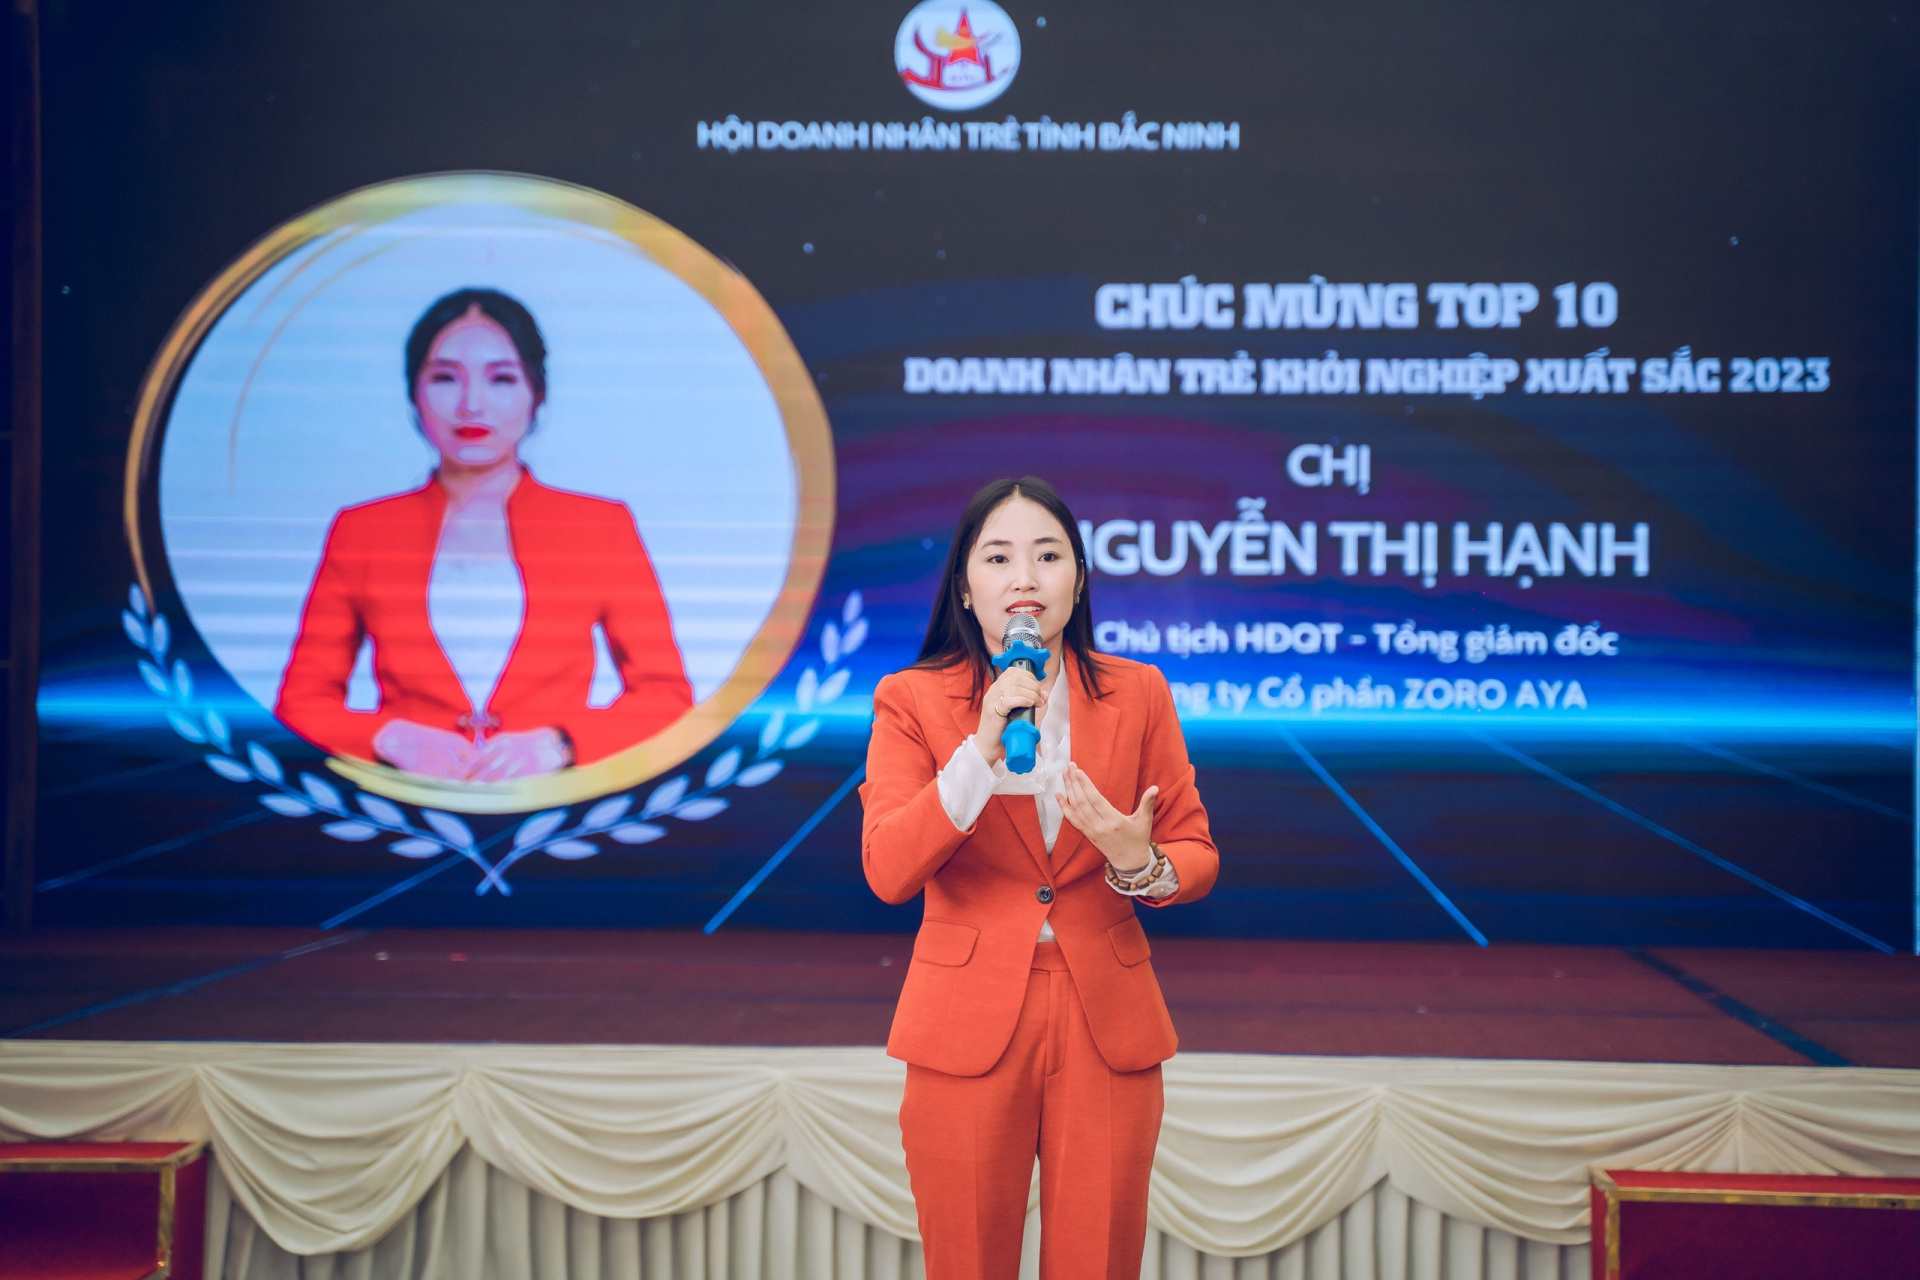 Chị Nguyễn Thị Hạnh - Tổng giám đốc Công ty cổ phần ZORO AYA phát biểu tại chương trình